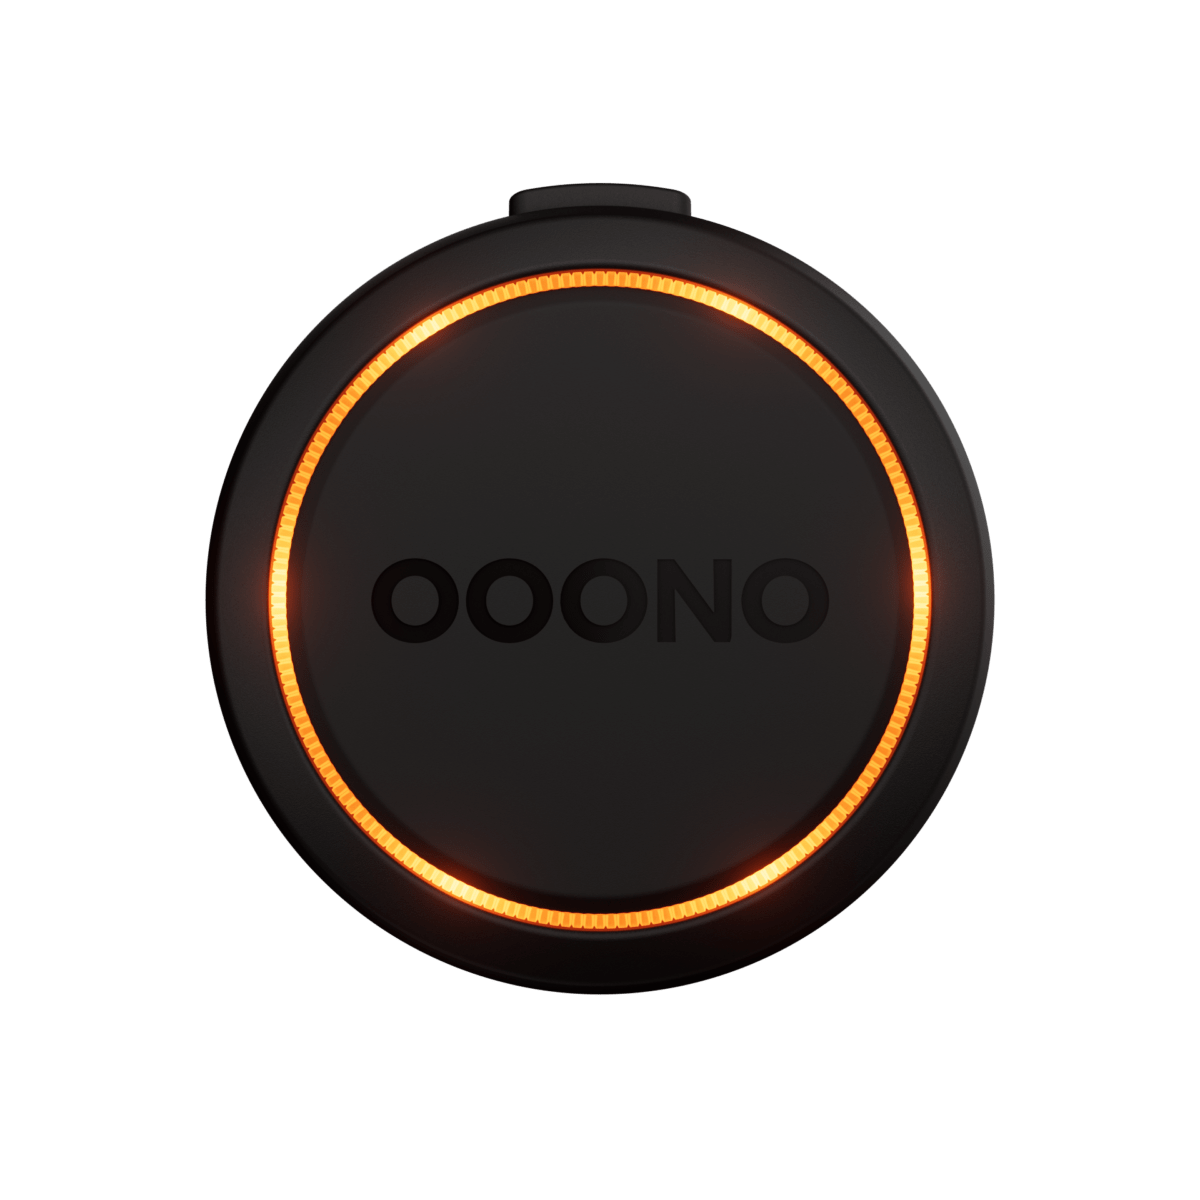 OOONO amplia la propria gamma con CO-DRIVER NO2 - MotoriNoLimits